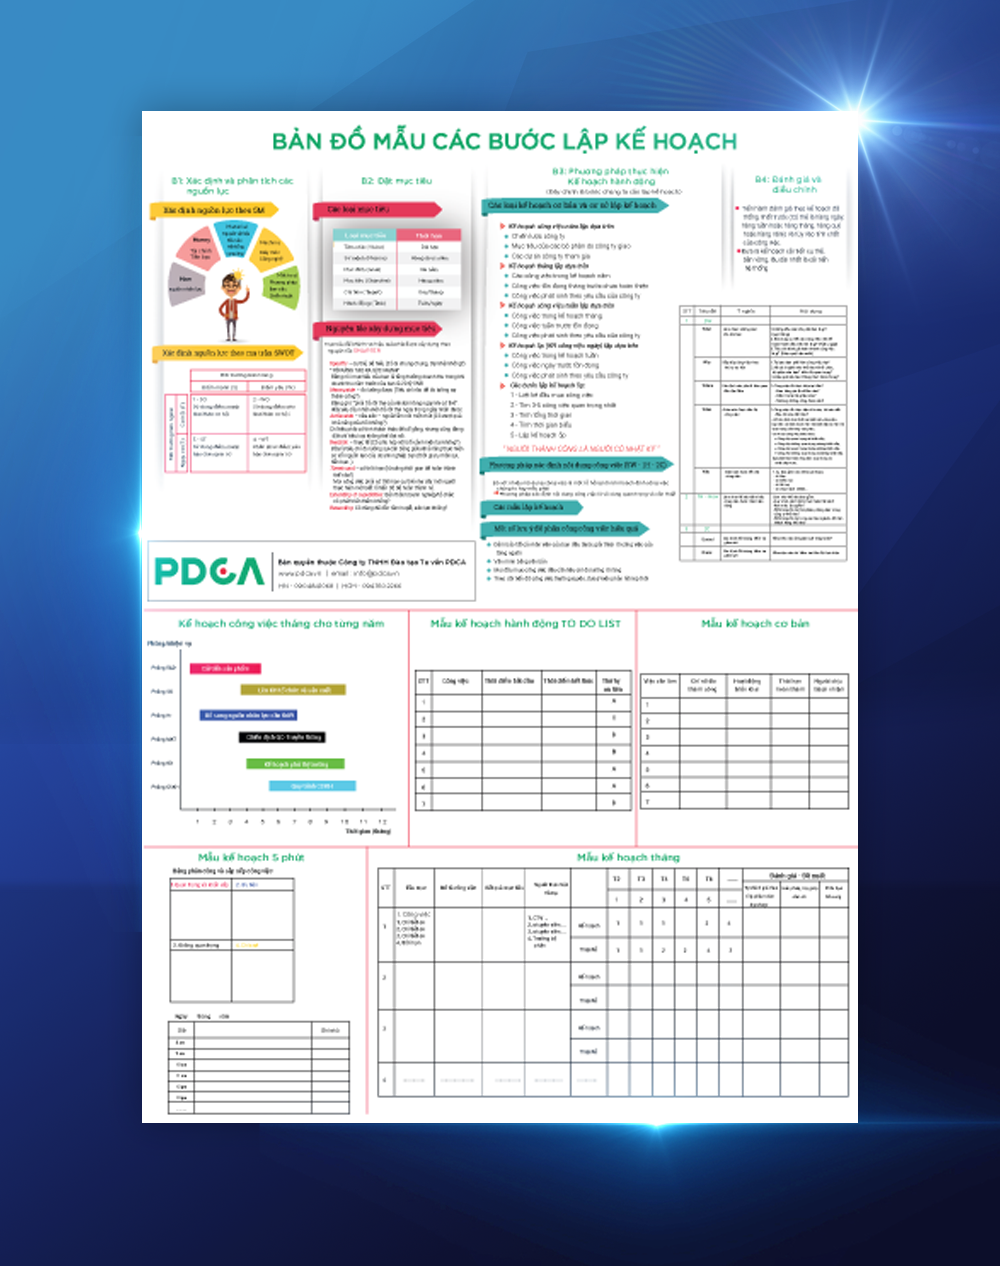 Full Sản Phẩm PDCA - trọn bộ 12 ấn phẩm